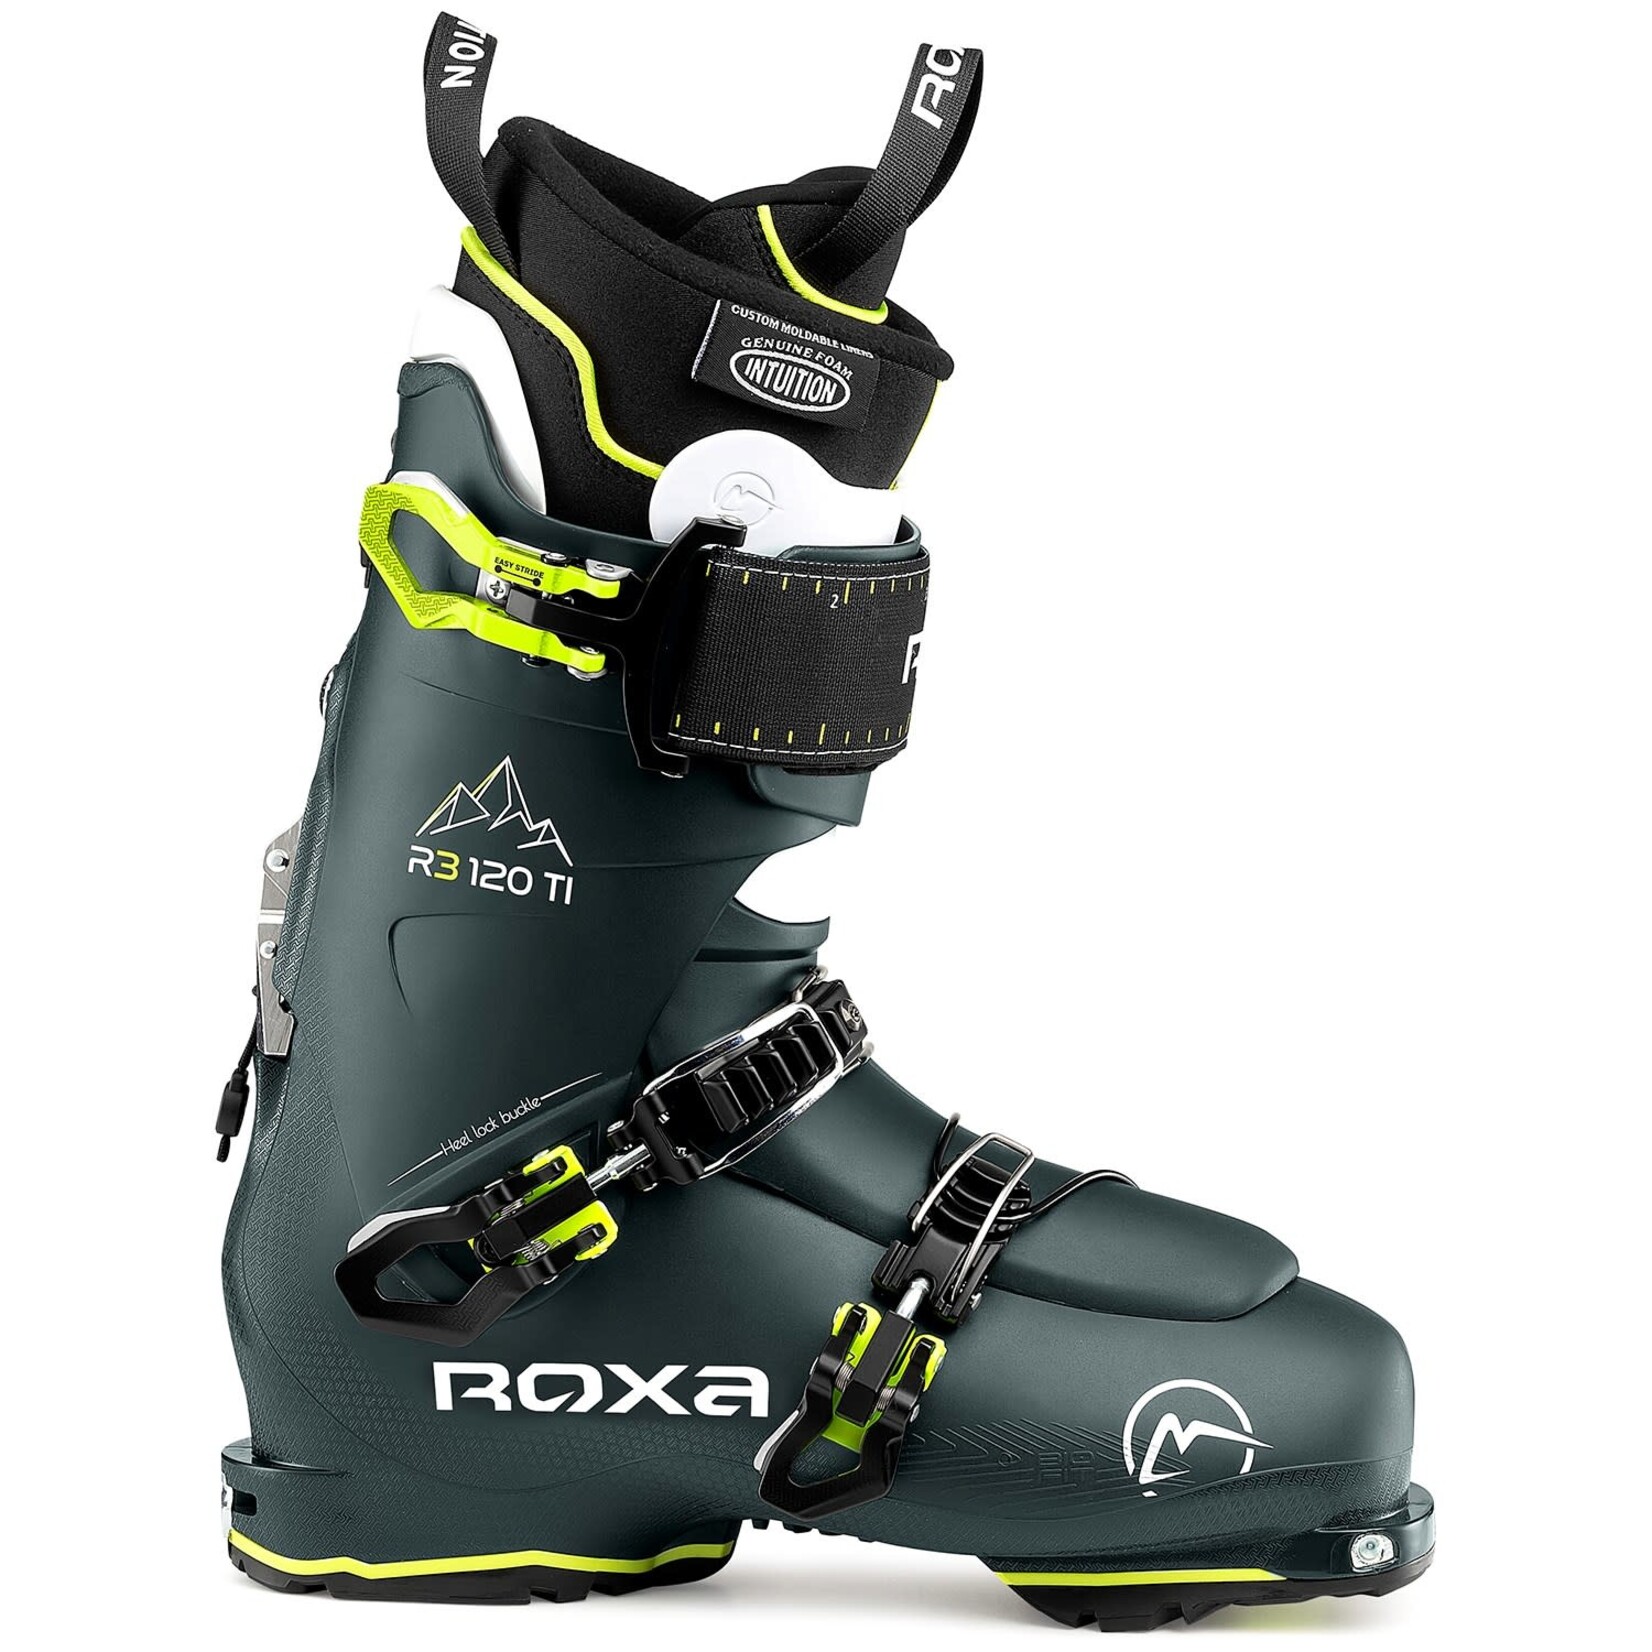 Roxa Roxa R3 120 TI I.R. GW Boot